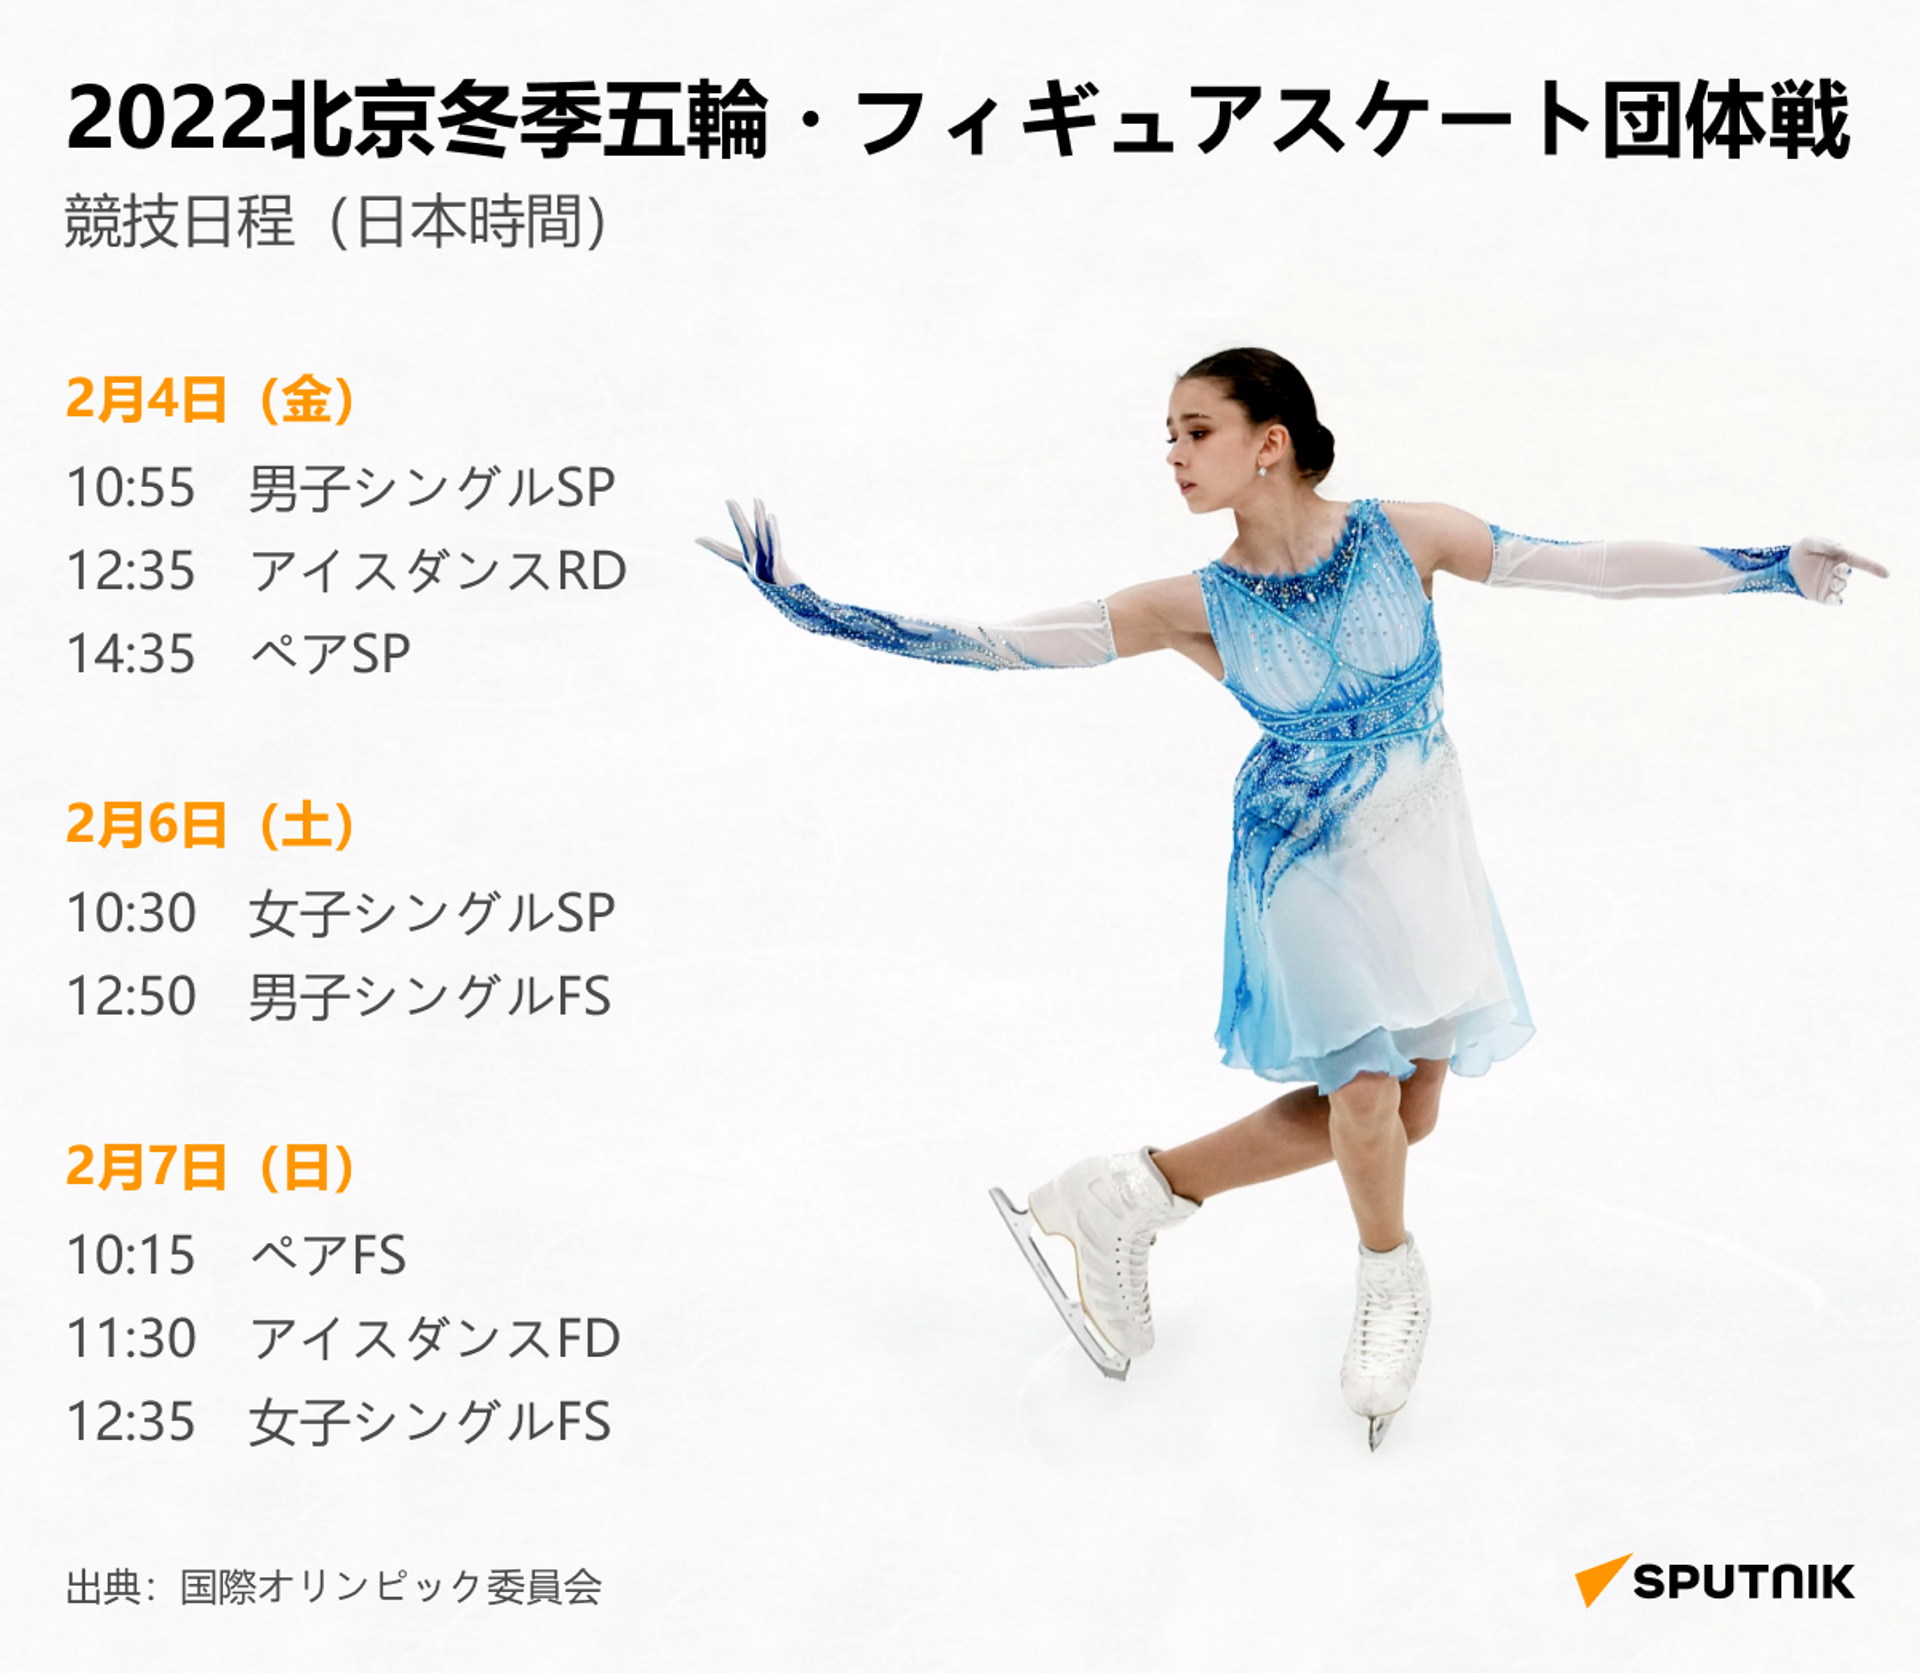 北京オリンピック・フィギュアスケート競技日程 - Sputnik 日本, 1920, 03.02.2022